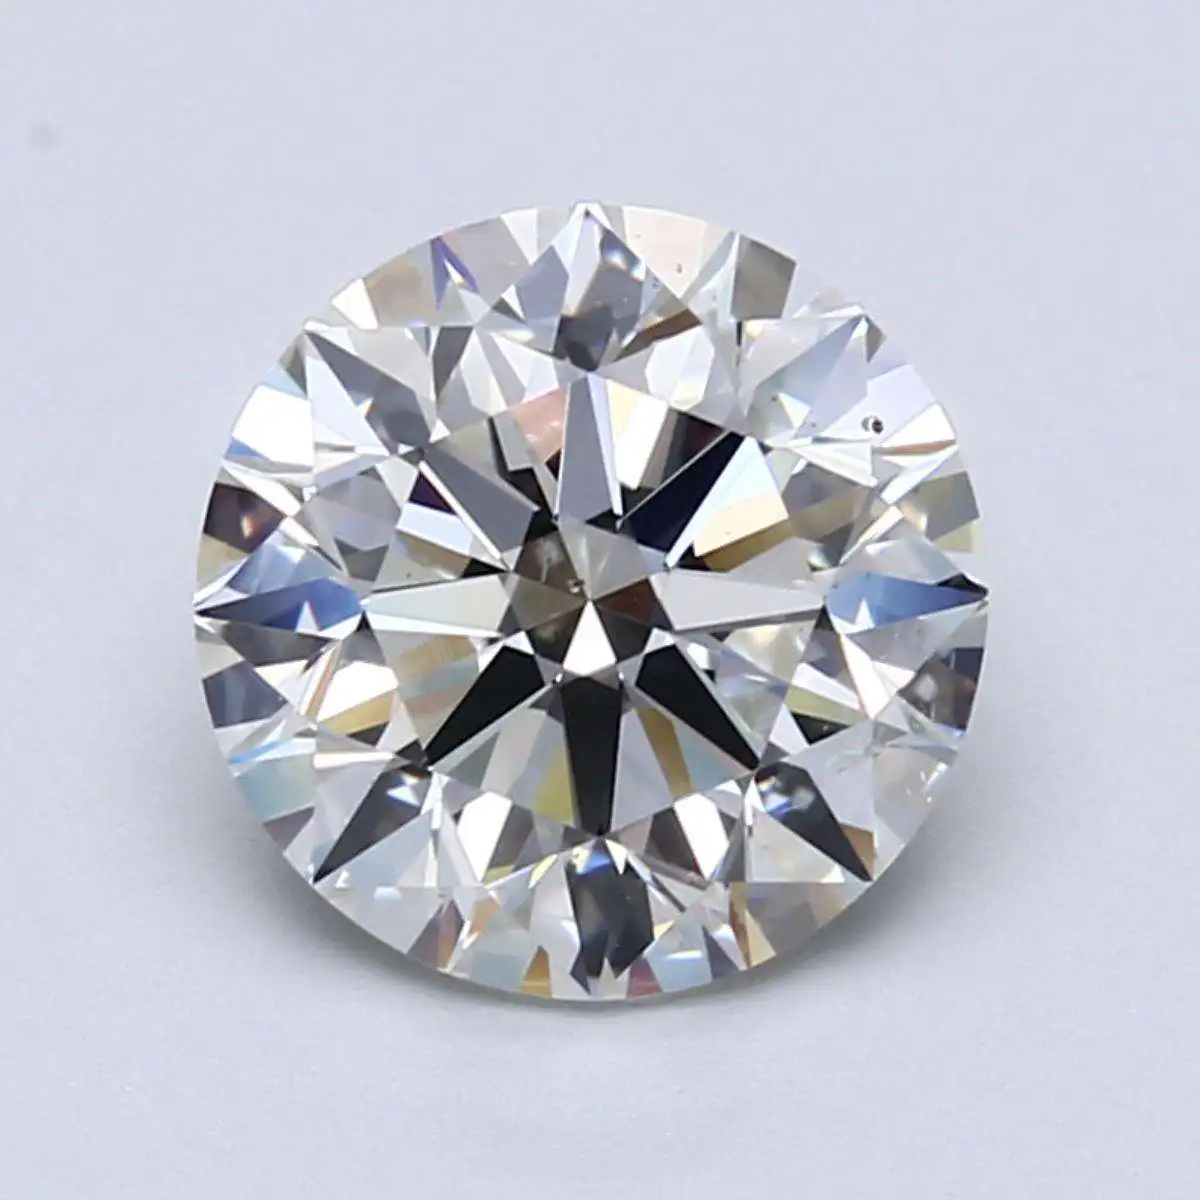 3 carat H color diamond